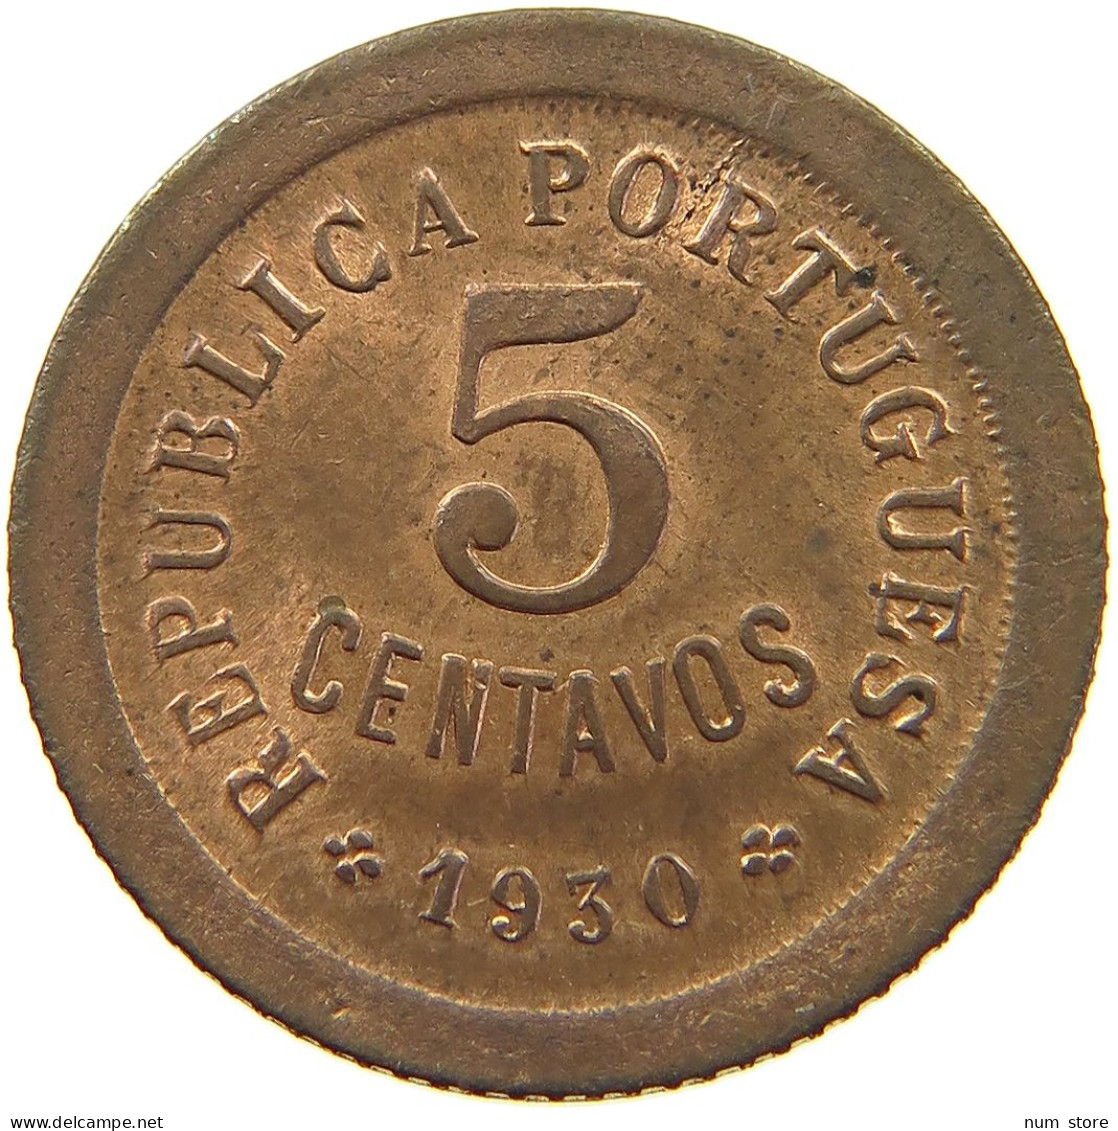 CAPE VERDE 5 CENTAVOS 1930  #t124 0033 - Cap Verde